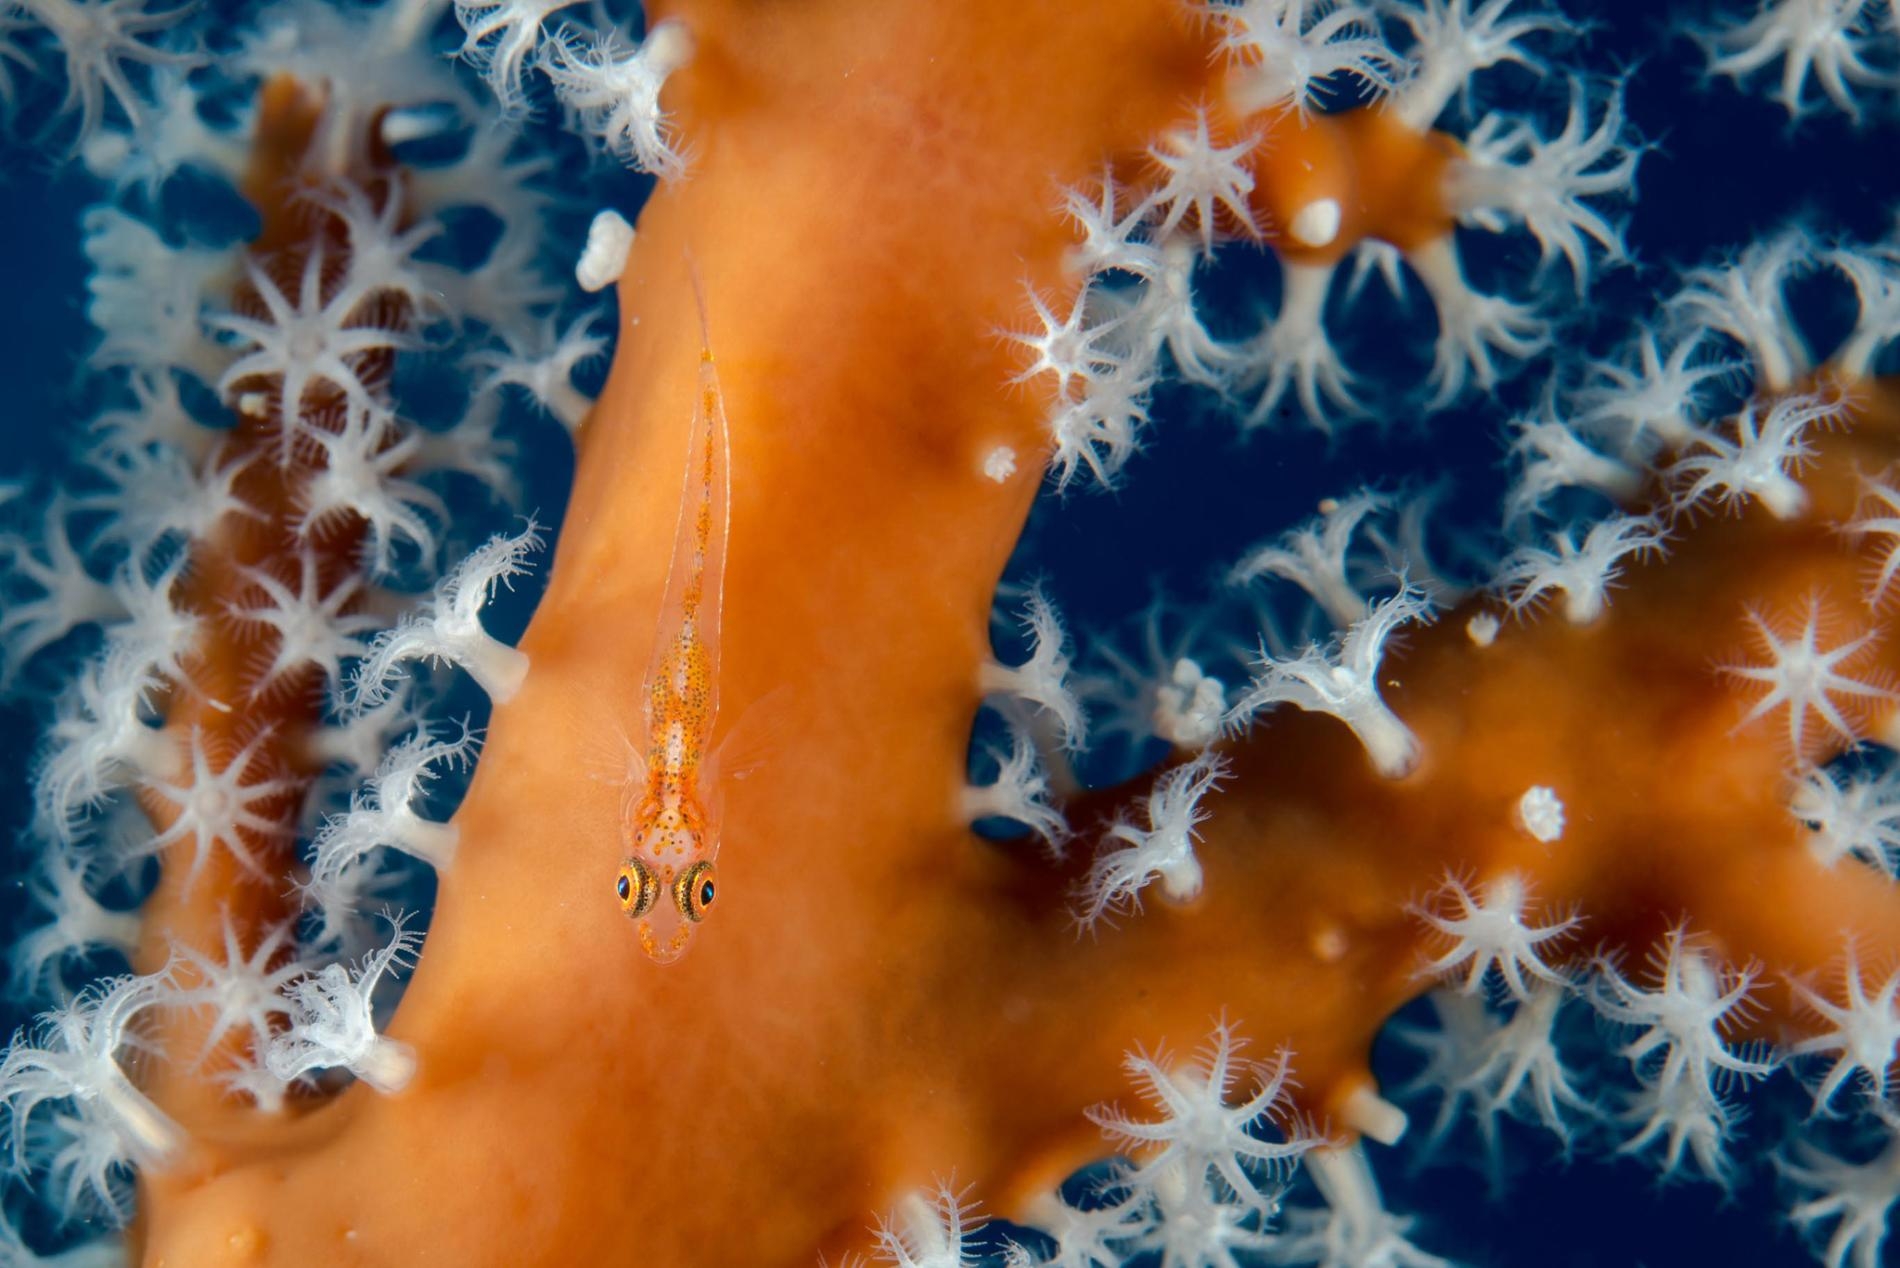 種類繁多的物種生活在帛琉大片受保護的海洋中，包括這條隱身在紅珊瑚分枝中的小蝦虎魚（ Gobiiformes）。PHOTOGRAPH BY ENRIC SALA, NAT GEO IMAGE COLLECTION